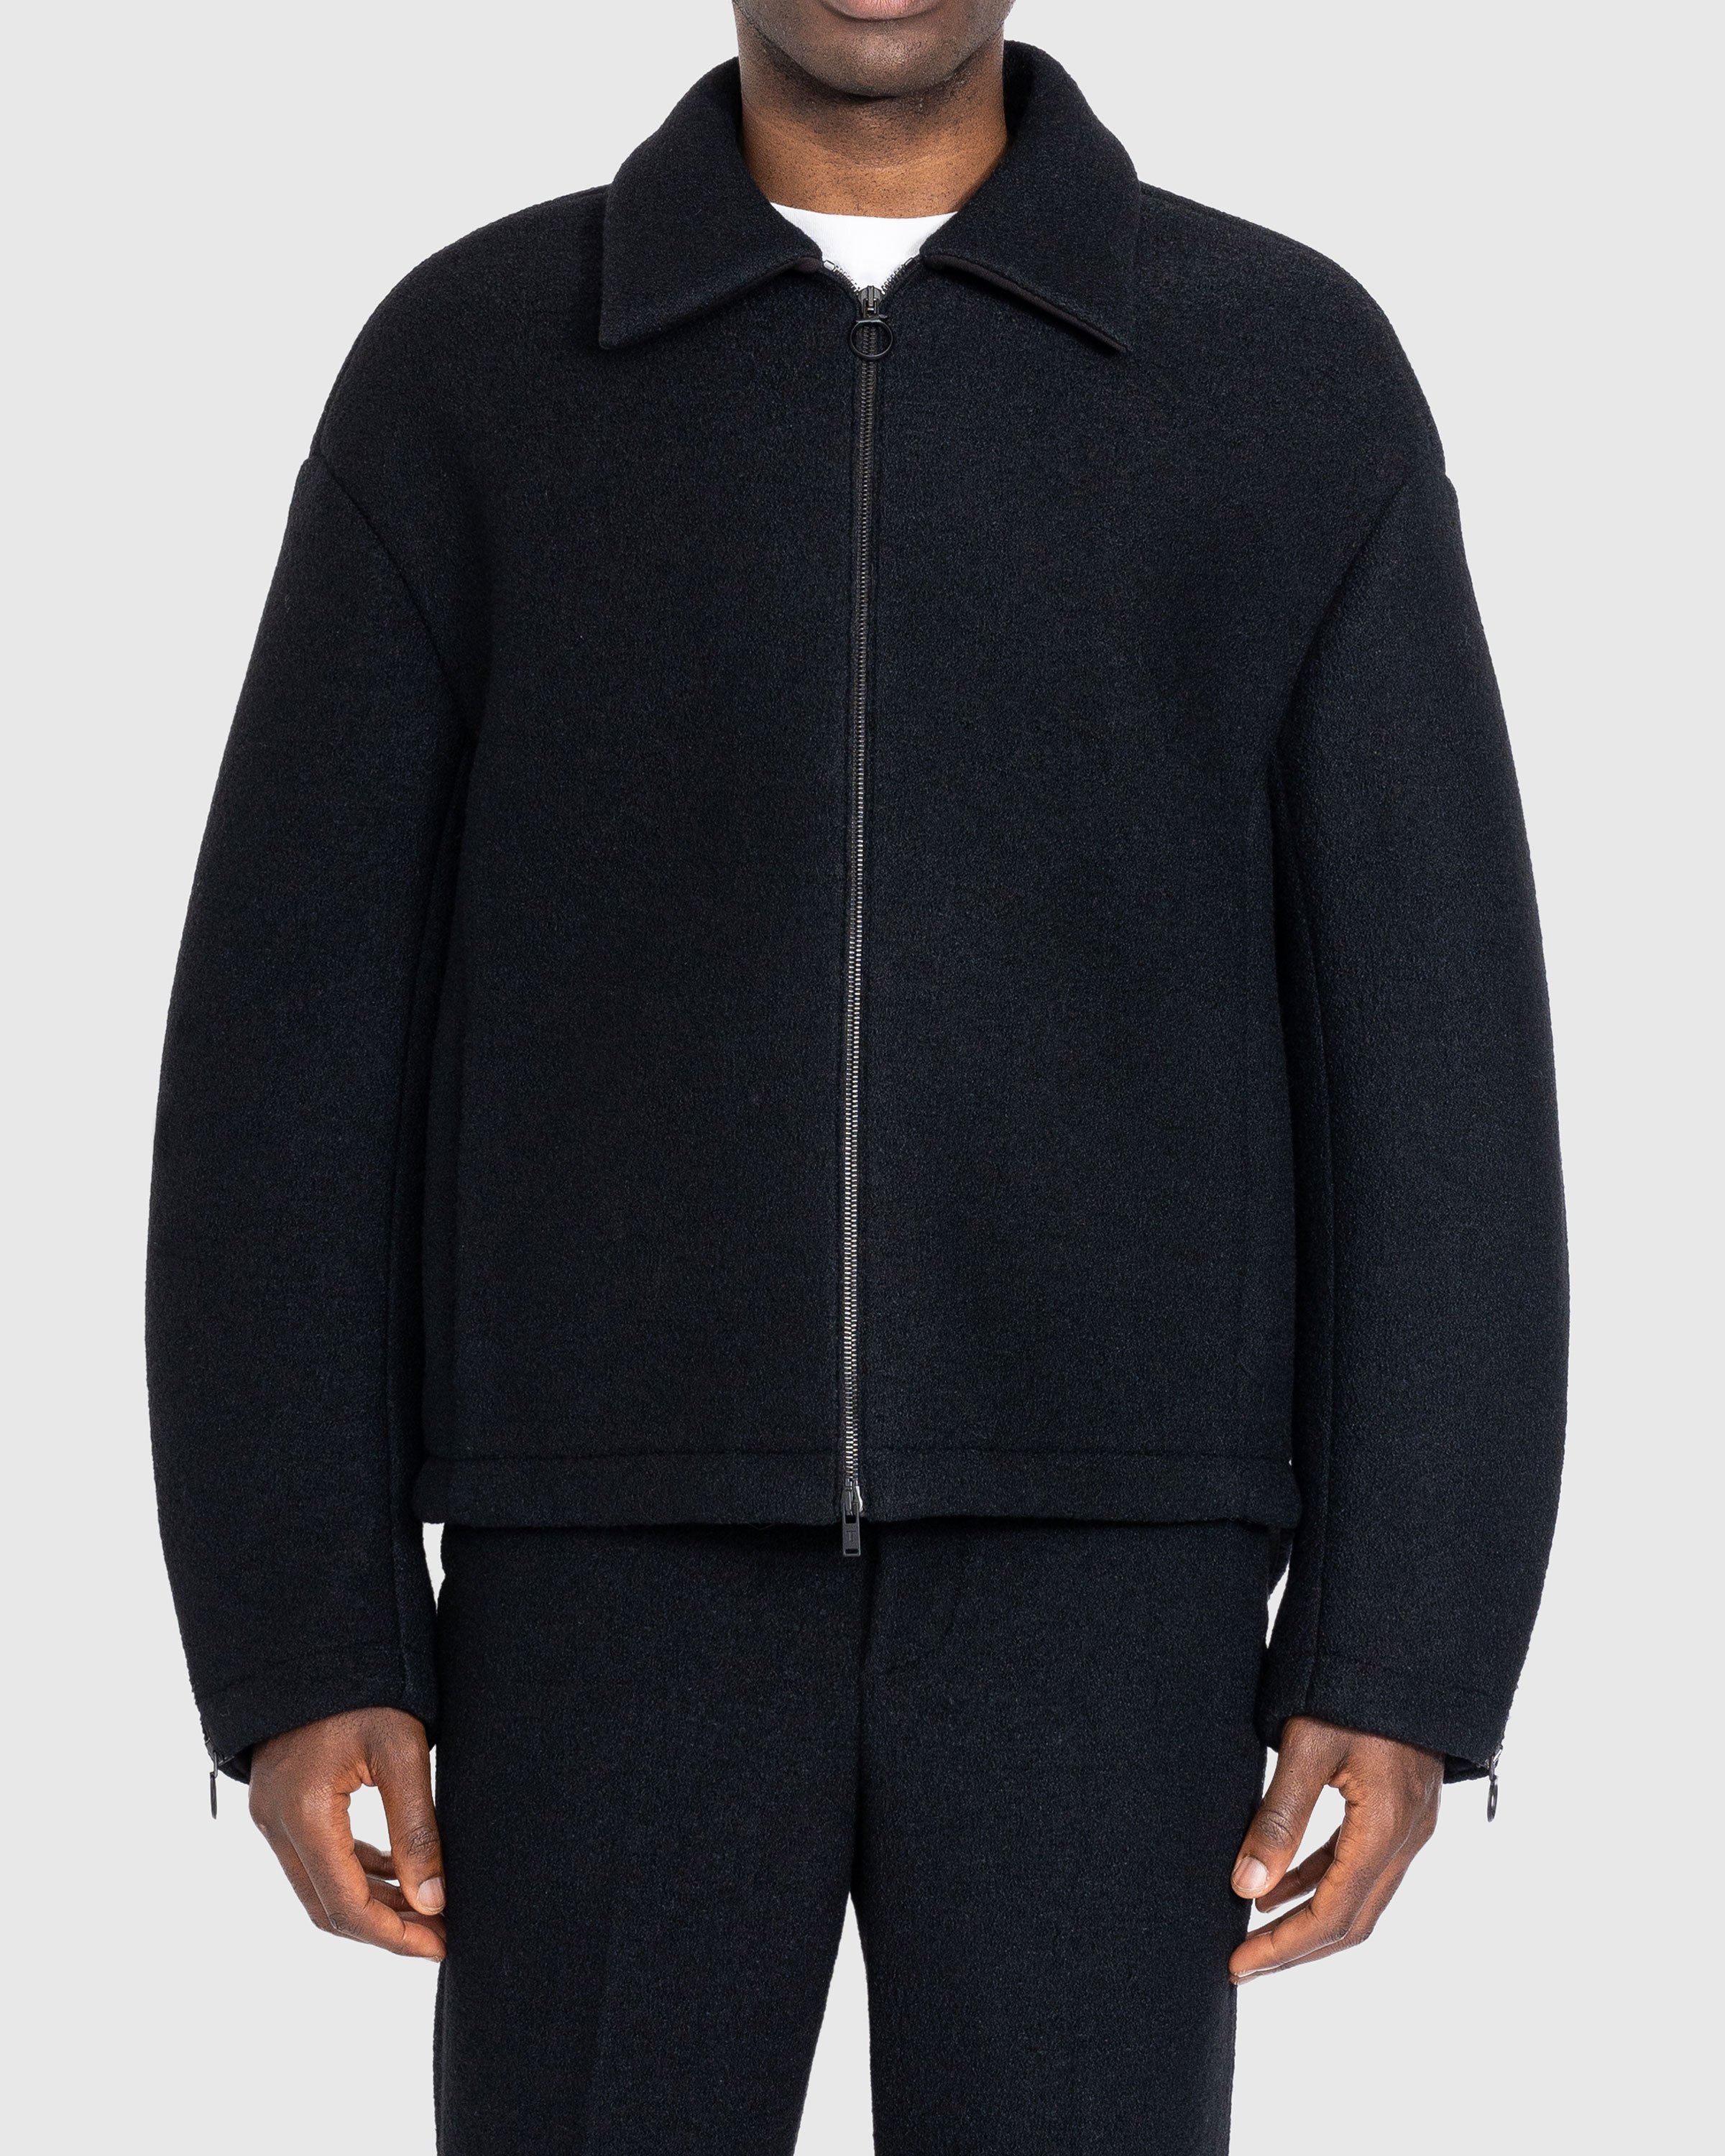 Trussardi - Boucle Jersey Scuba Jacket Black - Clothing - Black - Image 2